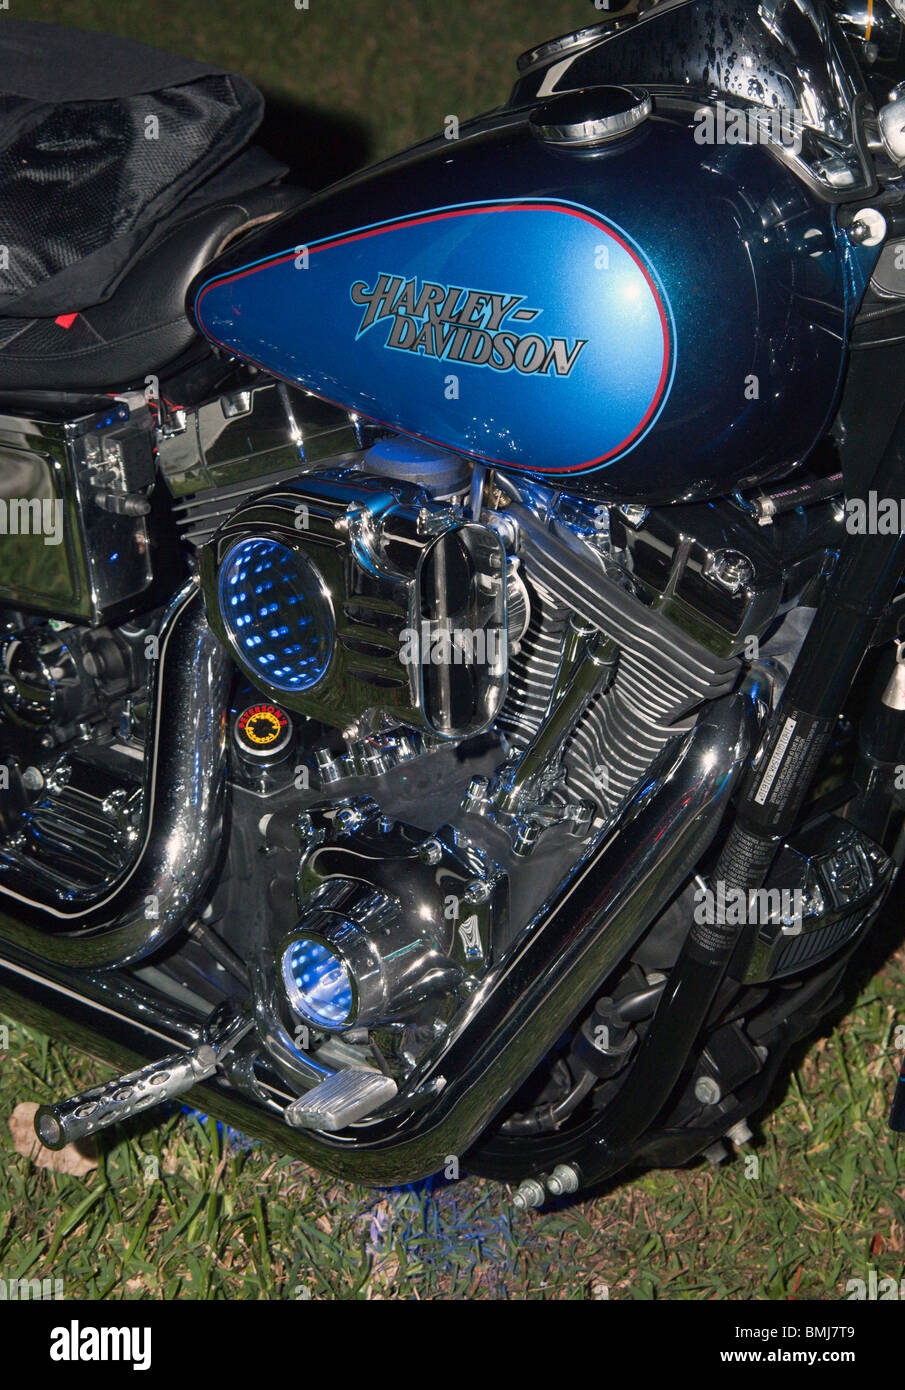 Moteur Harley Davidson dans la nuit Banque D'Images